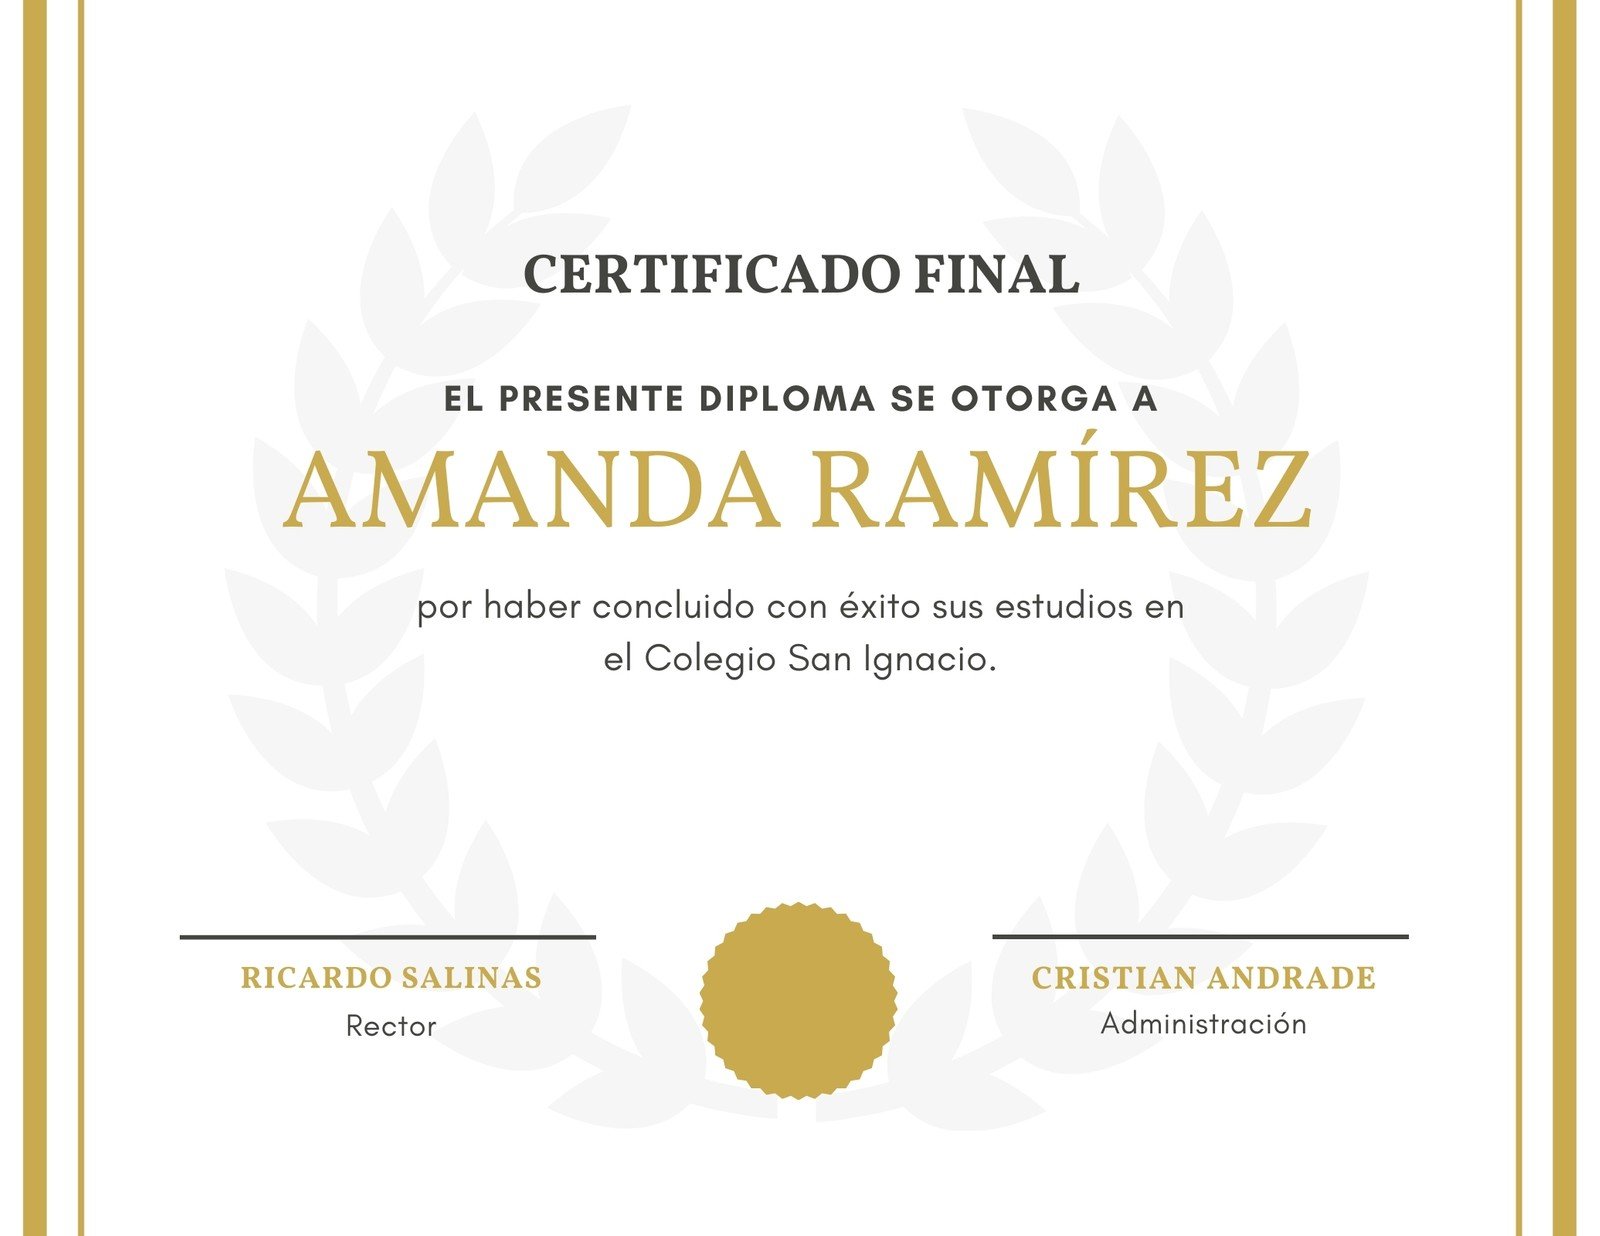 Blanco Dorado Bordes Diploma Bachillerato Certificado